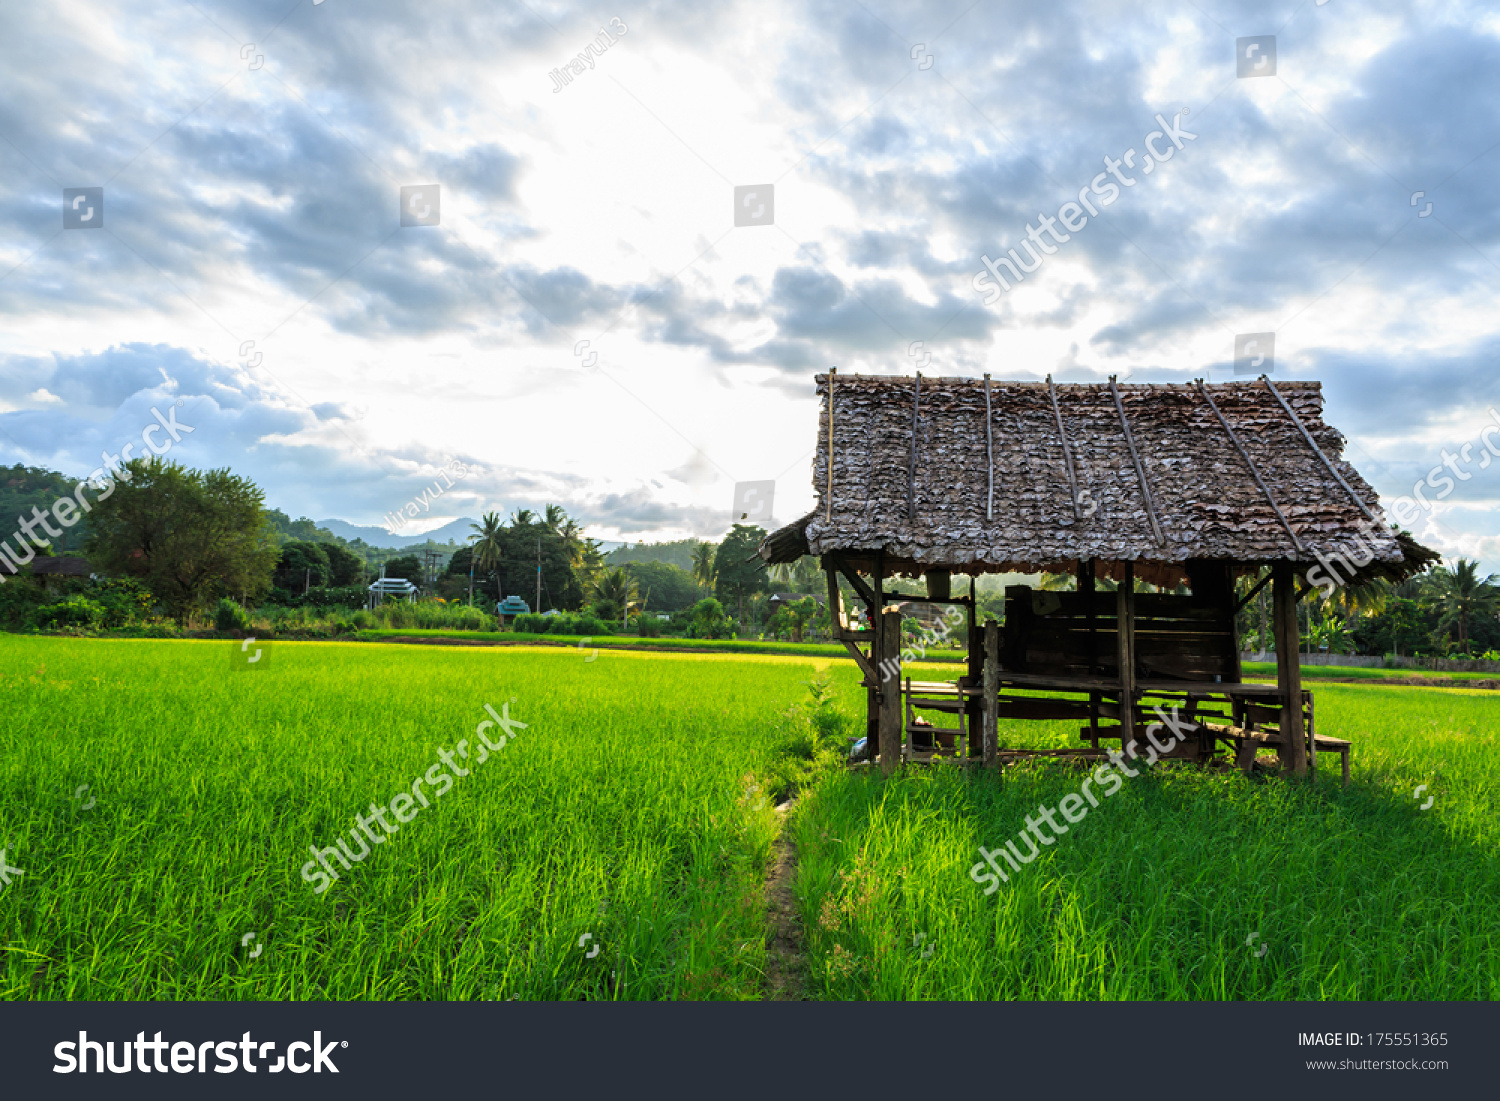 Small hut in rice farm #175551365